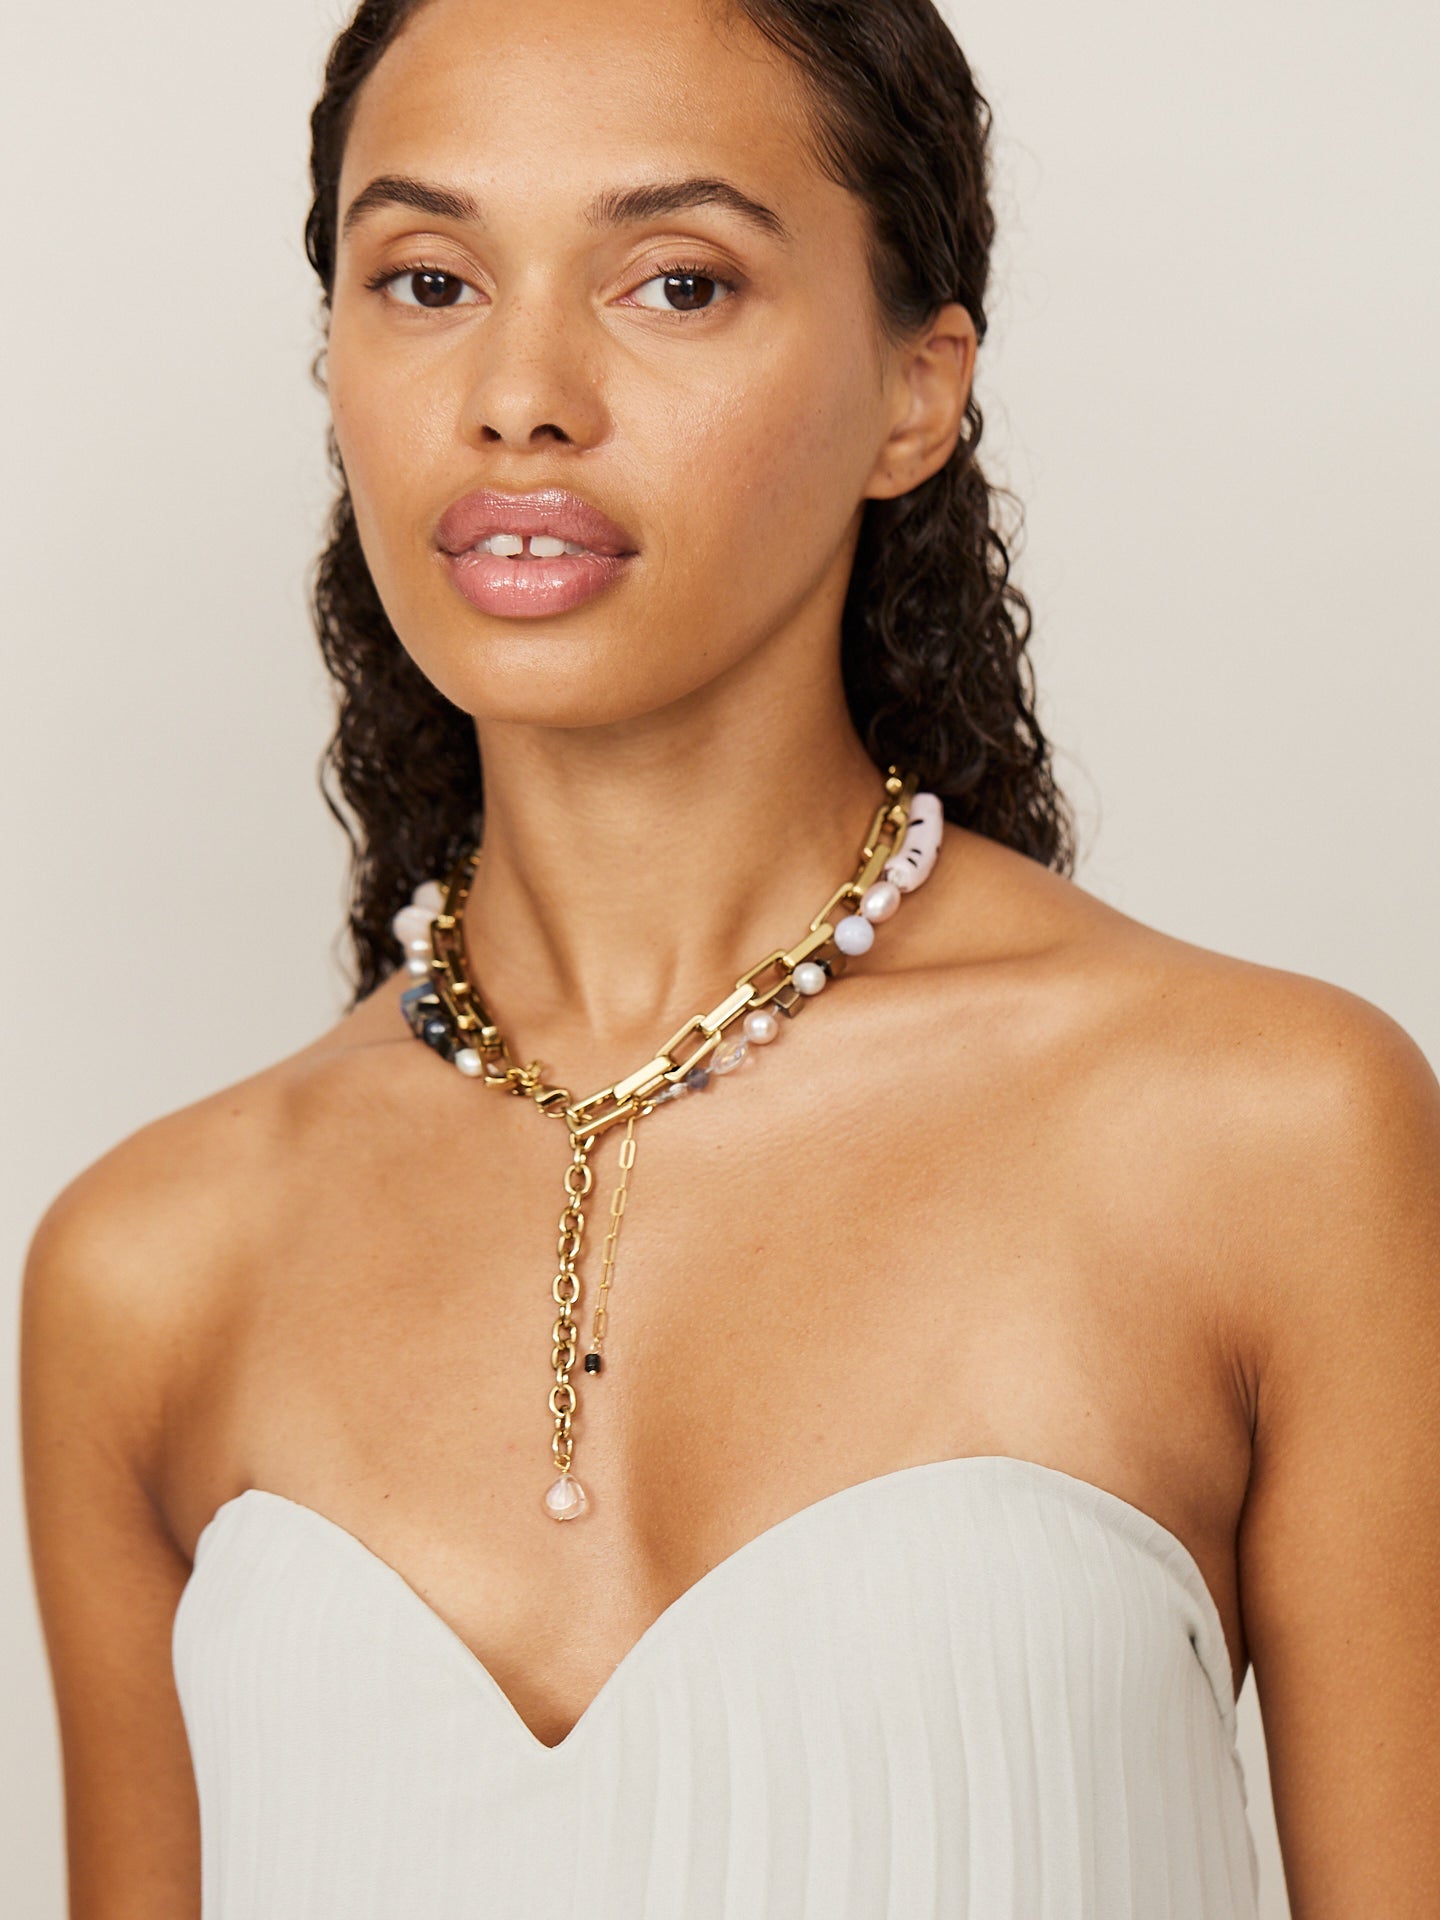 Frau trägt eine Kombination aus zwei goldenen Ketten mit hellen Perlen, die einen extravaganten Look unterstreichen.